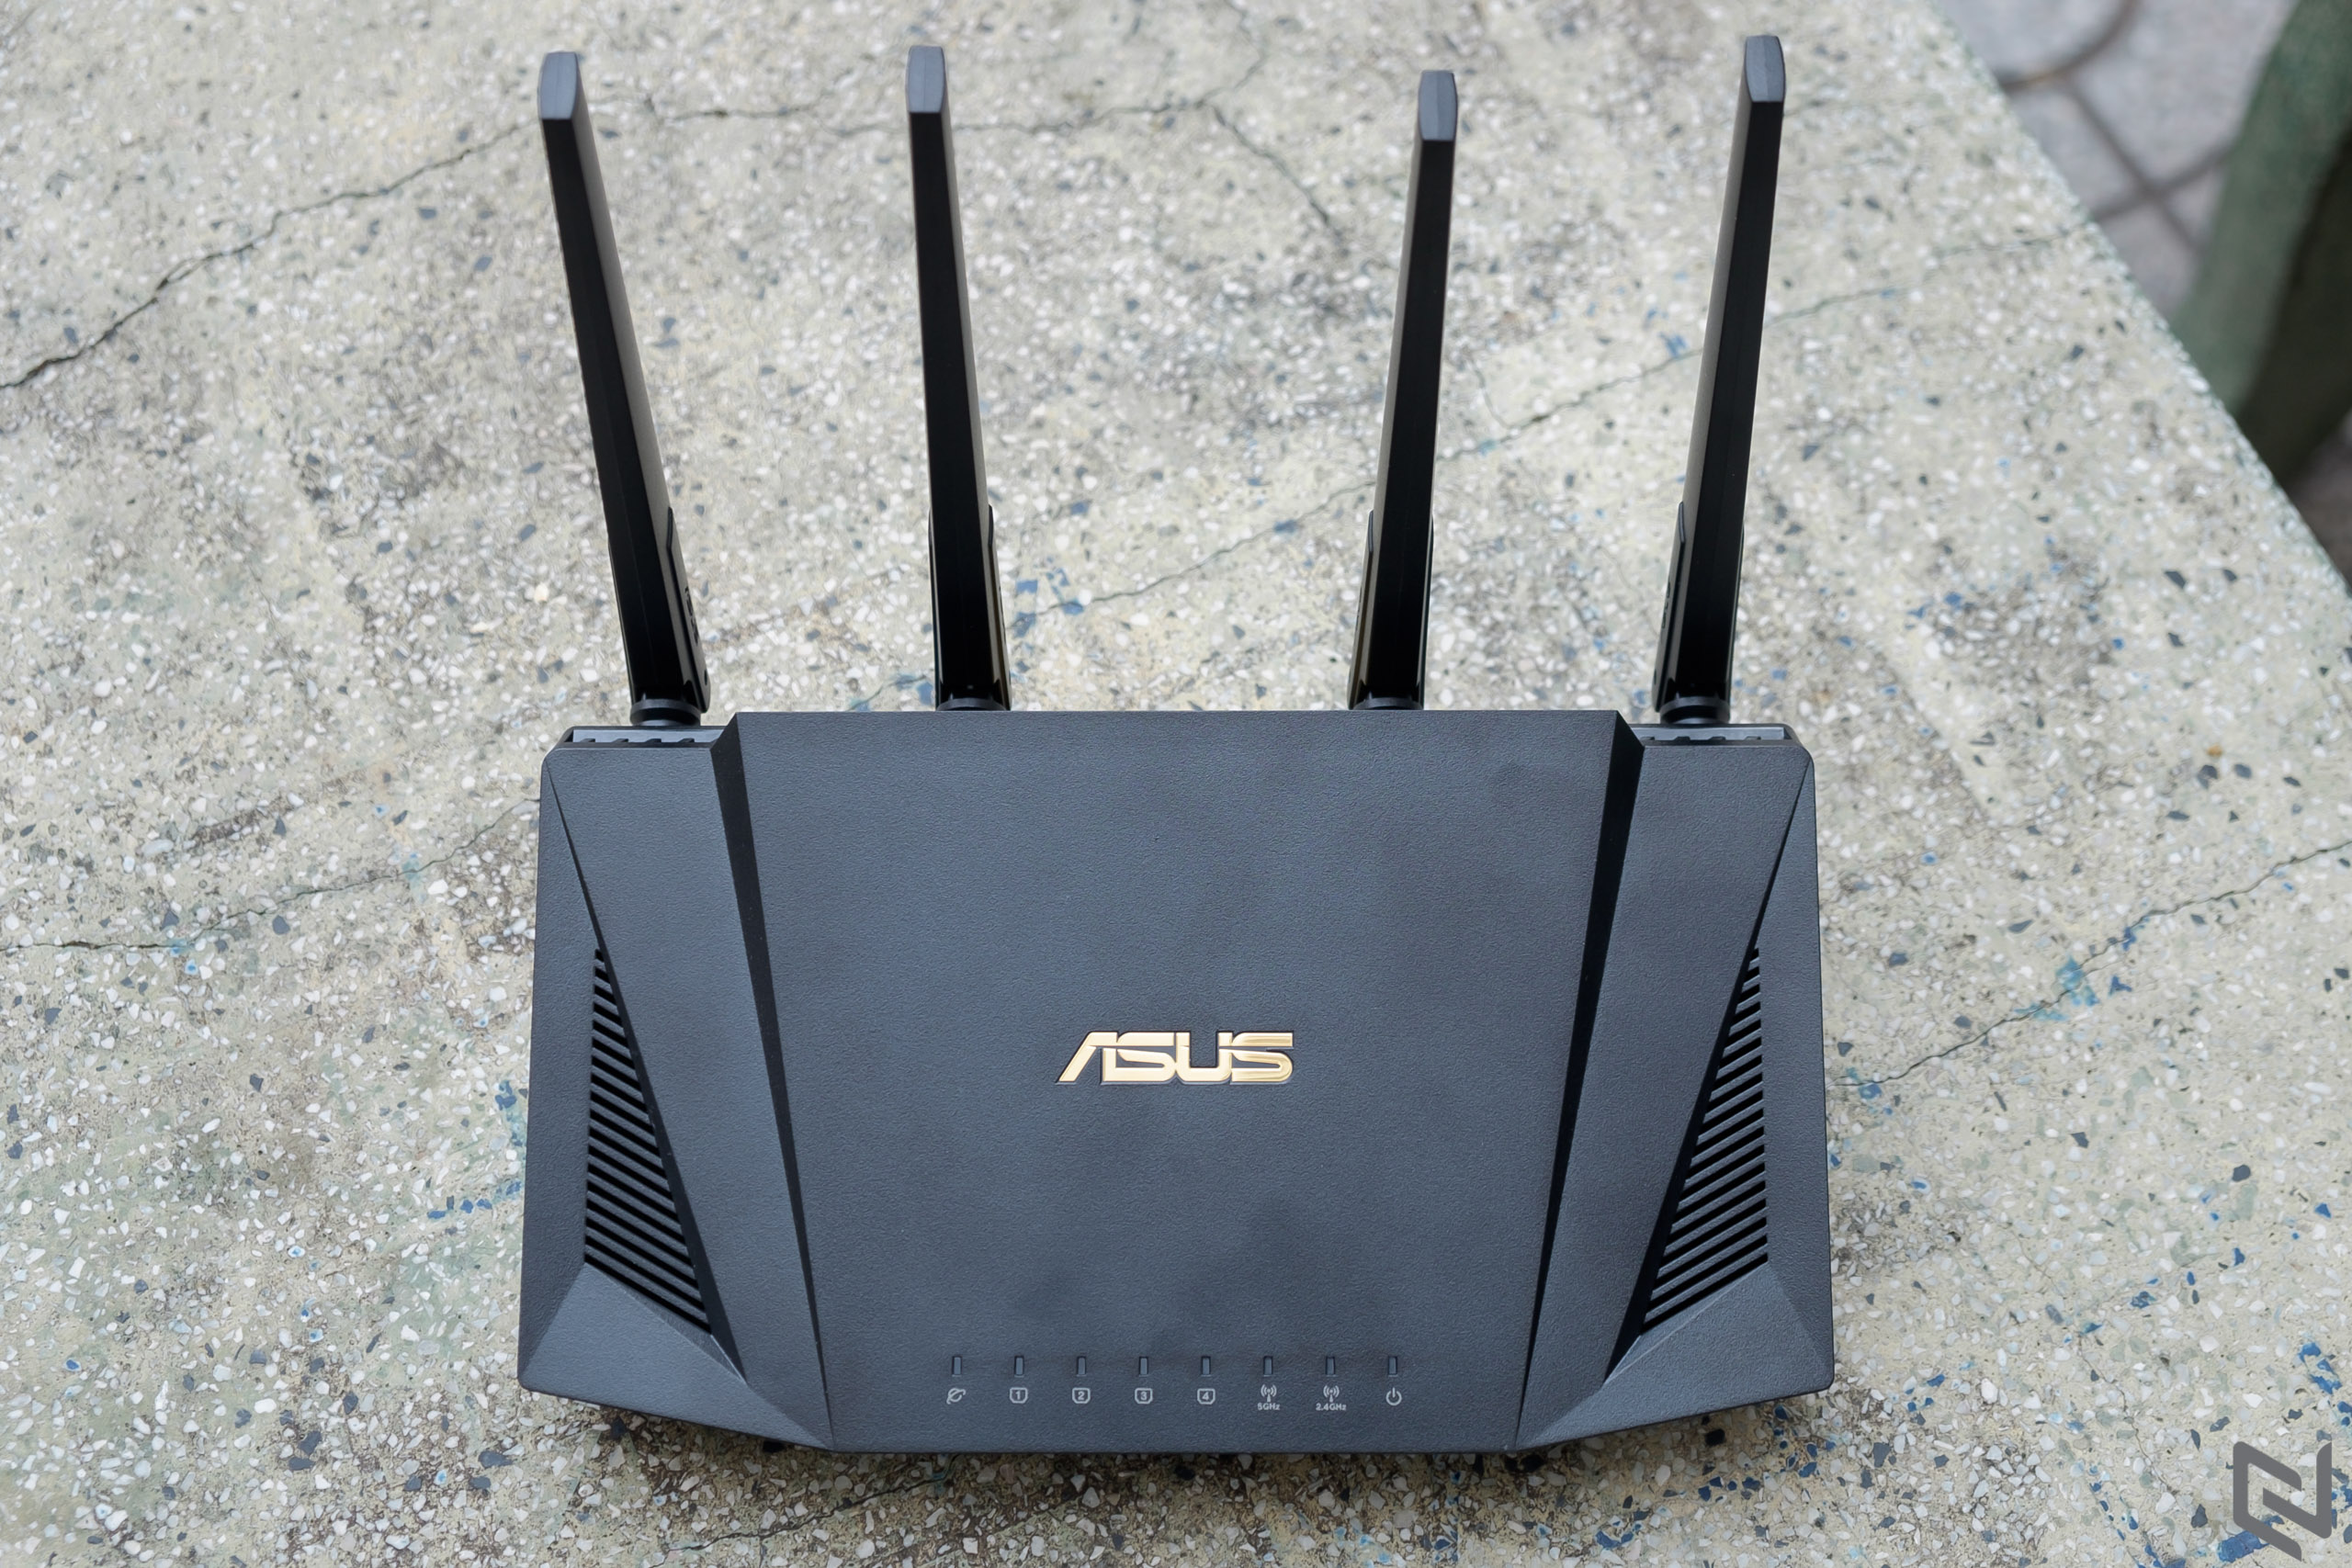 Đánh giá router RT-AX3000 và card mạng PCE-AX58BT từ ASUS: Đem các tính năng WiFi 6 cao cấp đến mọi nhà